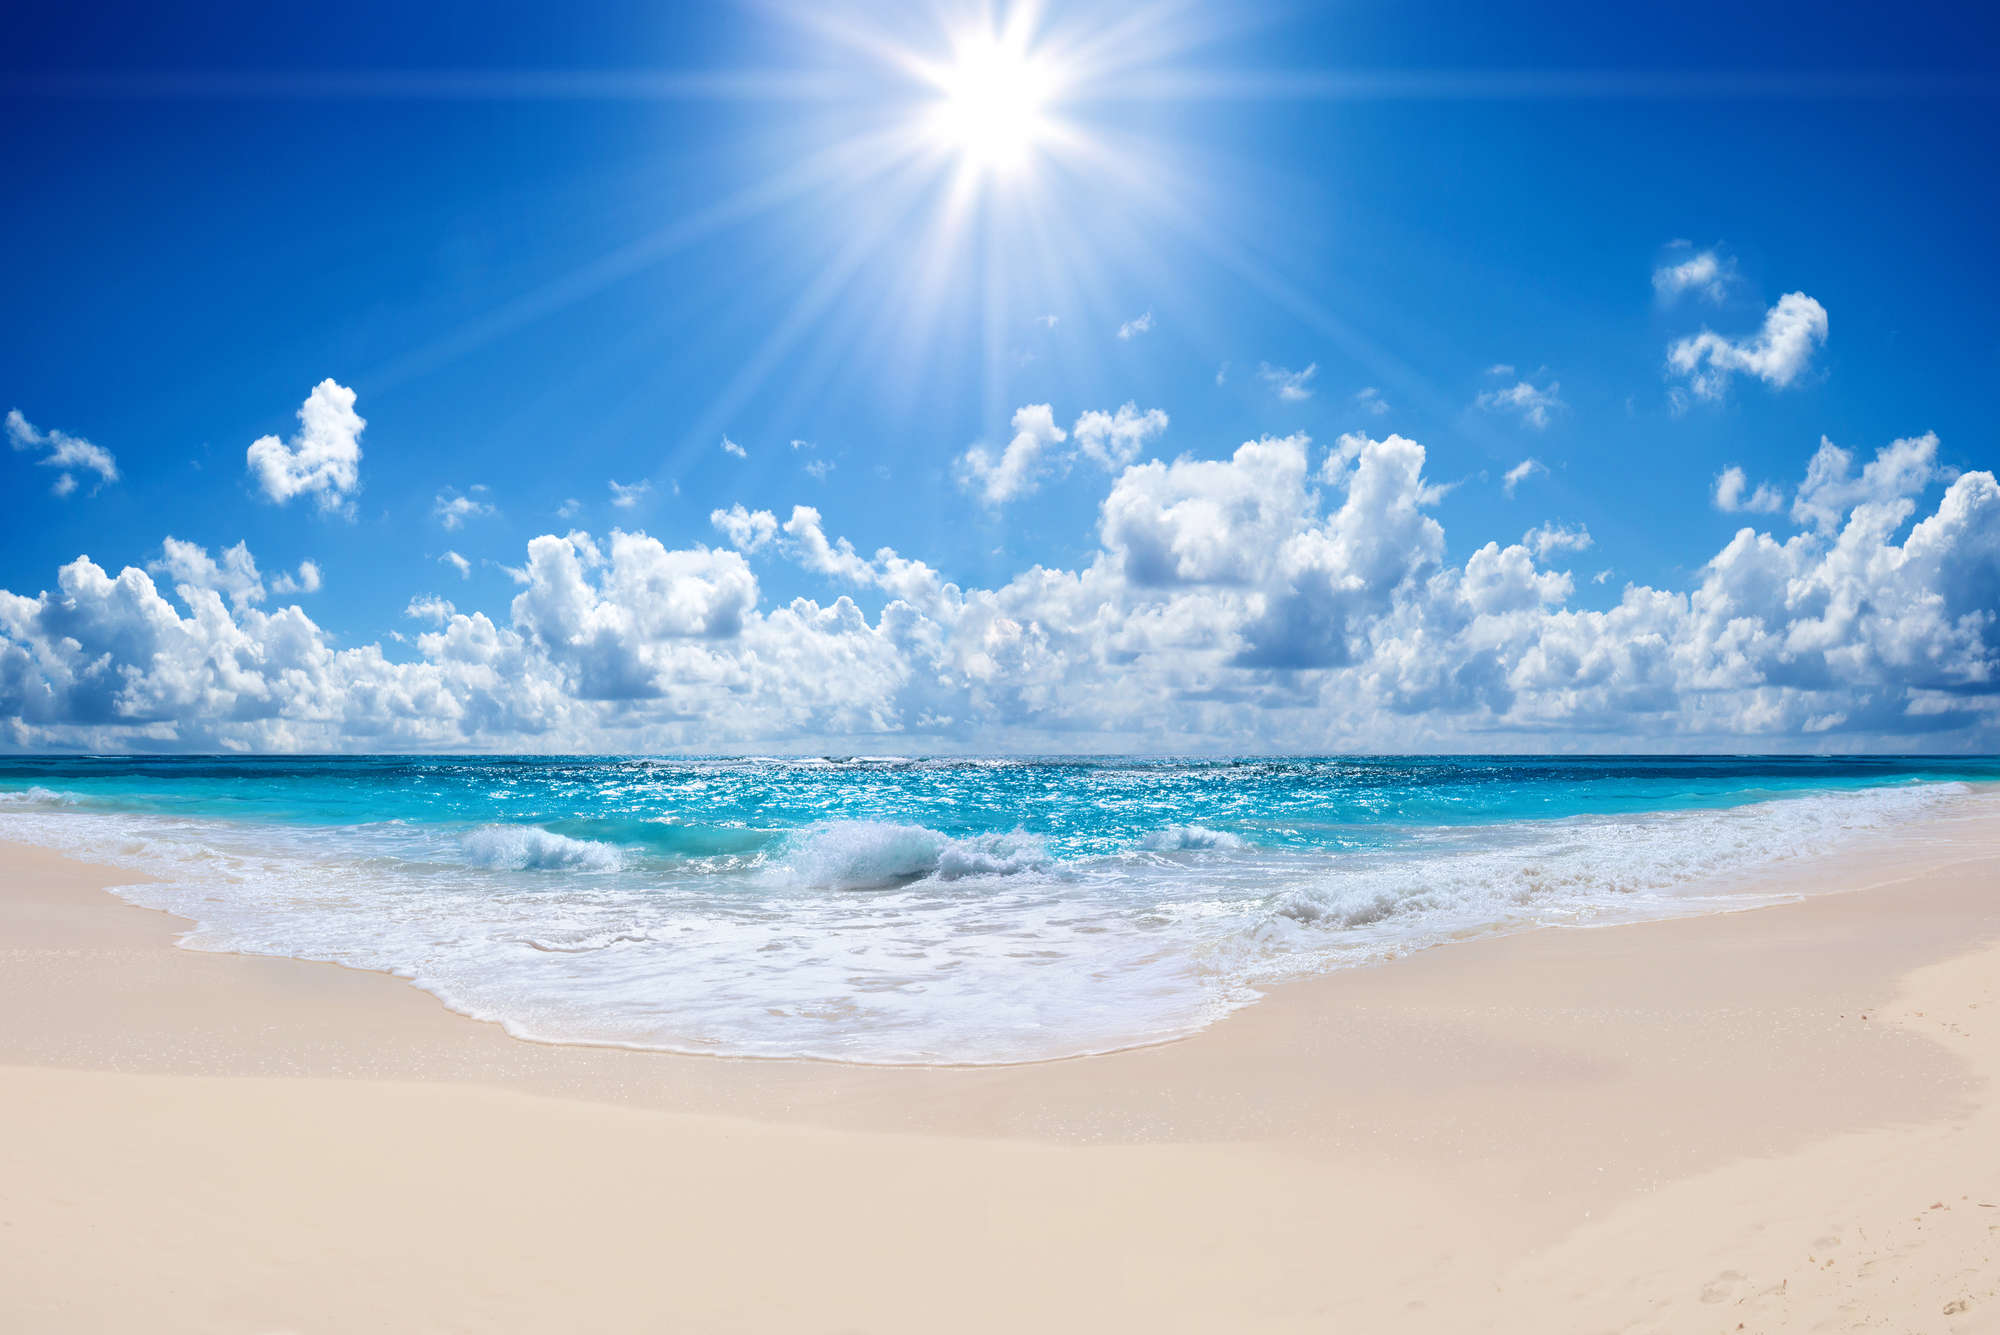             Papel pintado de playa con olas y sol brillante sobre vellón liso de primera calidad
        